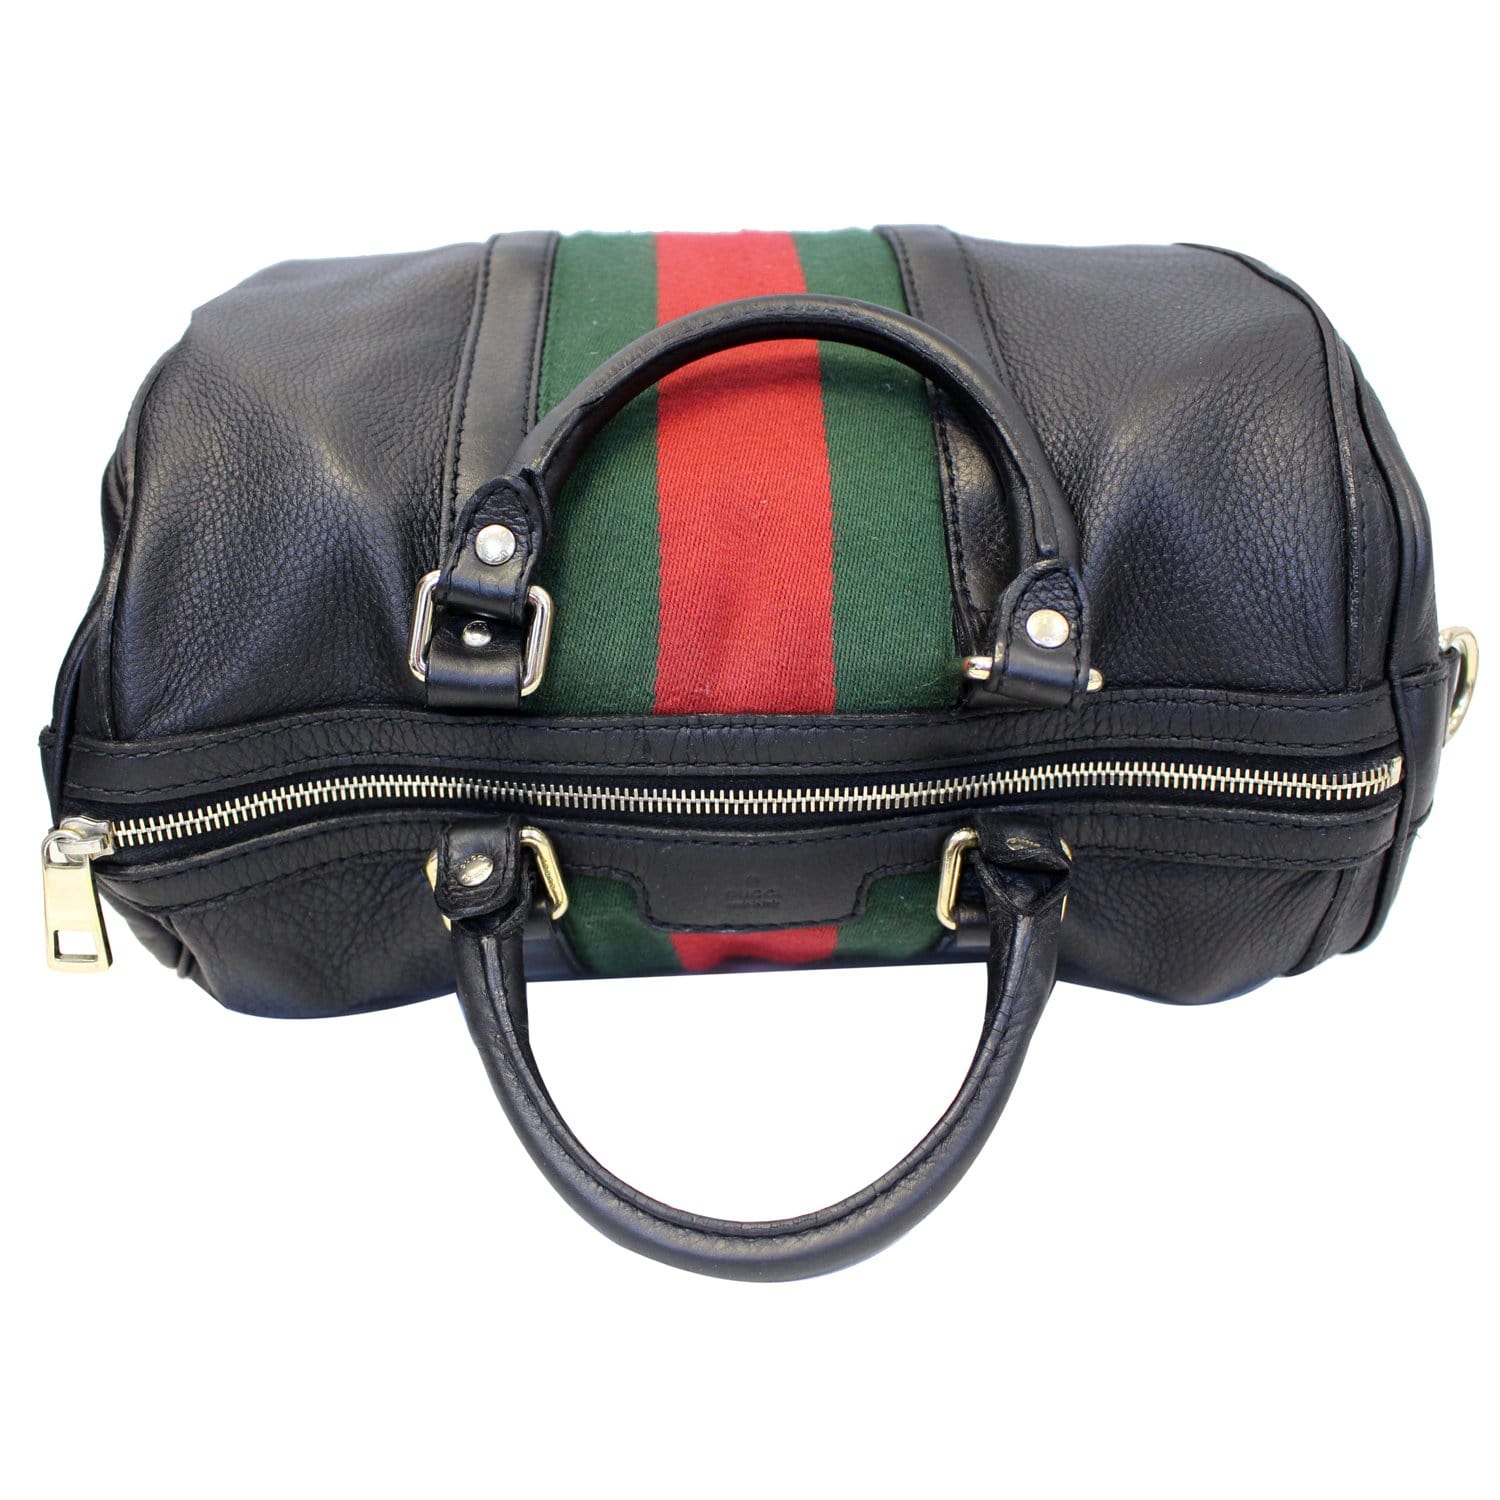 Gucci Vintage Leather Web Stripe Boston Bag Black